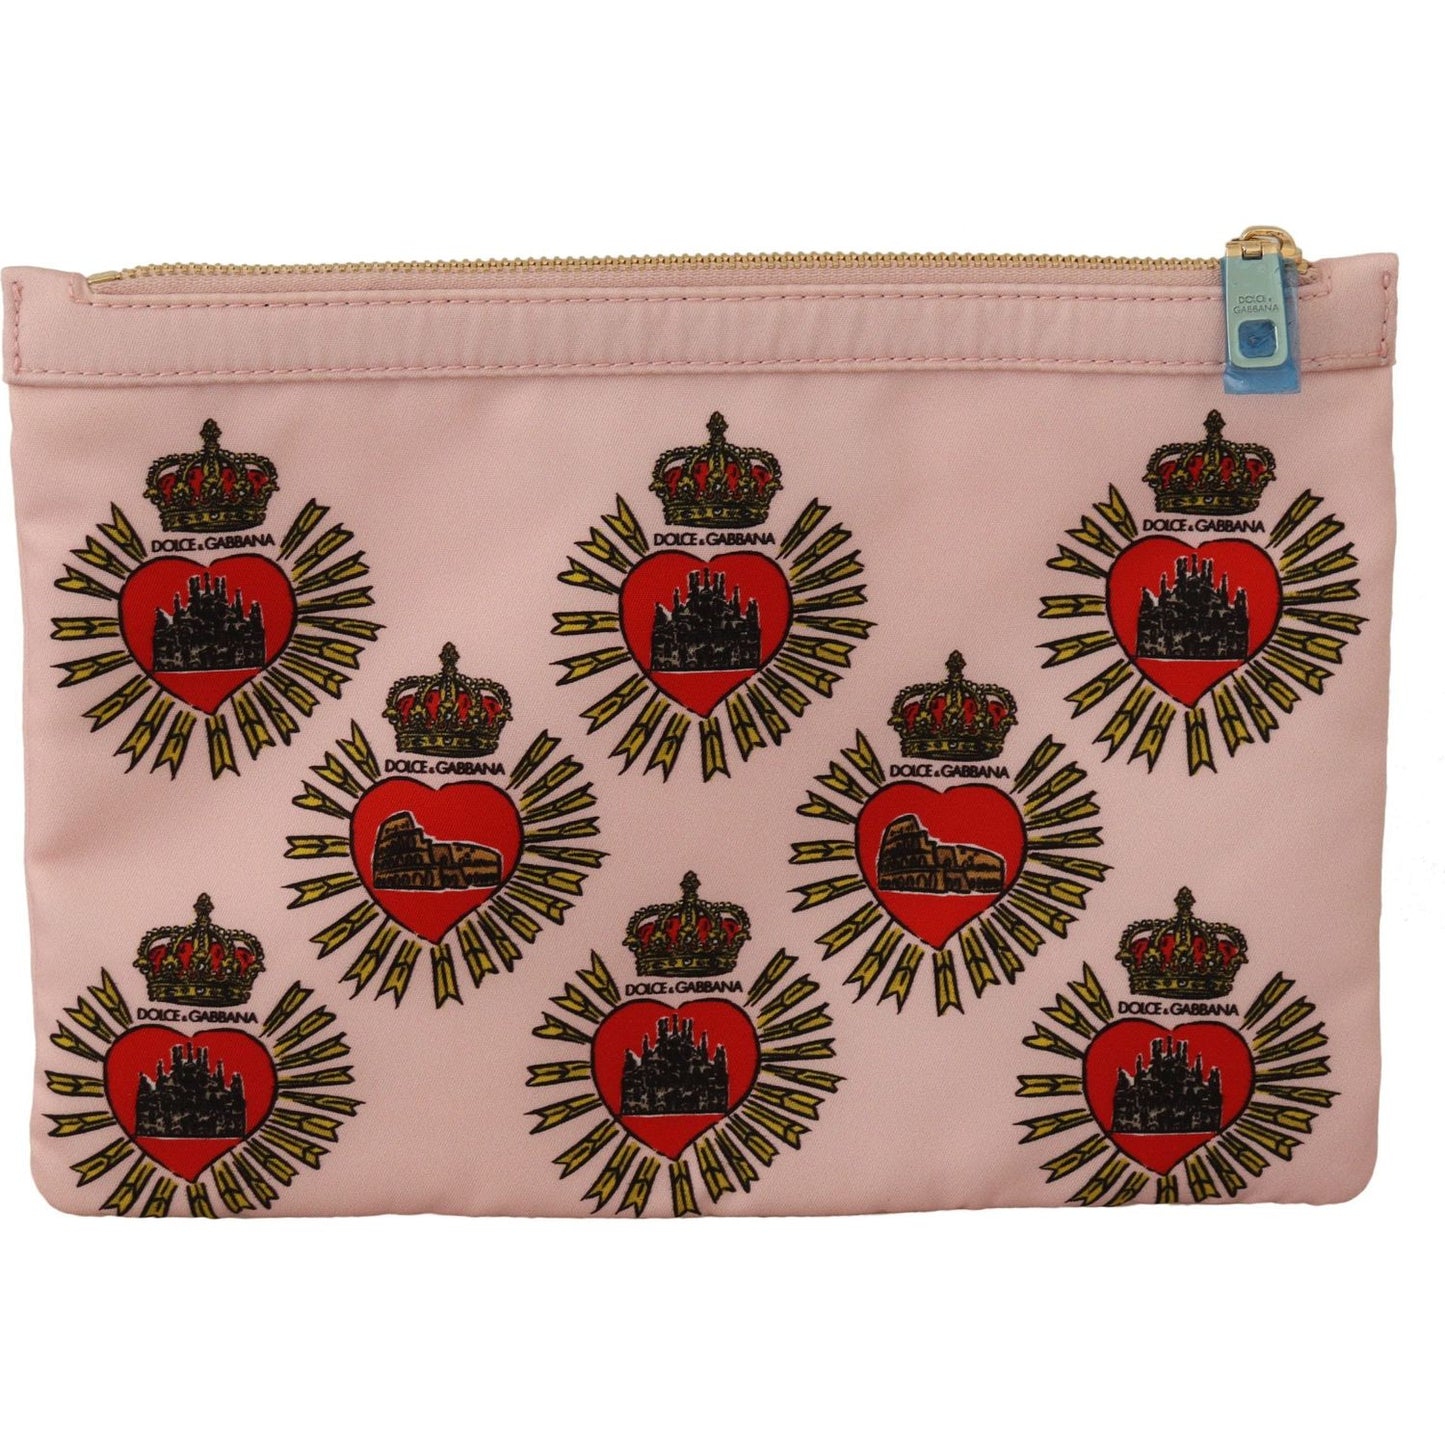 Dolce & Gabbana Elegant Pink Heart Clutch Wallet WOMAN WALLETS clutch-pink-d-g-logo-devotion-heart-nylon-pouch-wallet IMG_2615-scaled-9ca29ae4-e08.jpg